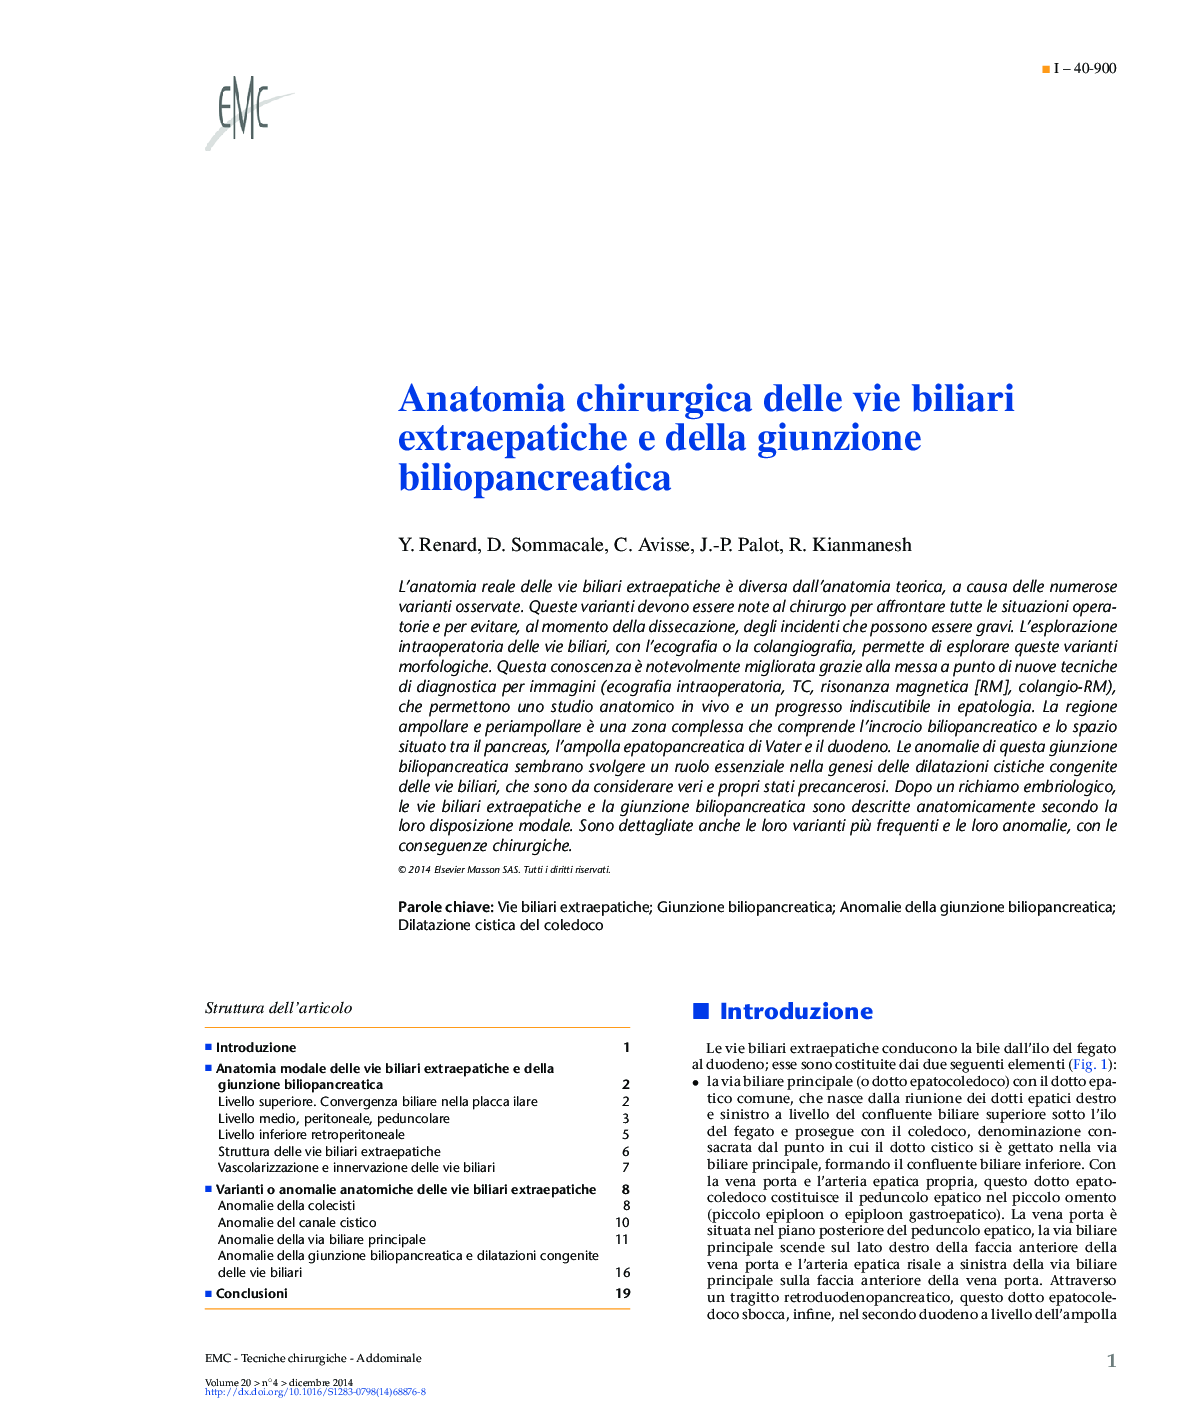 Anatomia chirurgica delle vie biliari extraepatiche e della giunzione biliopancreatica